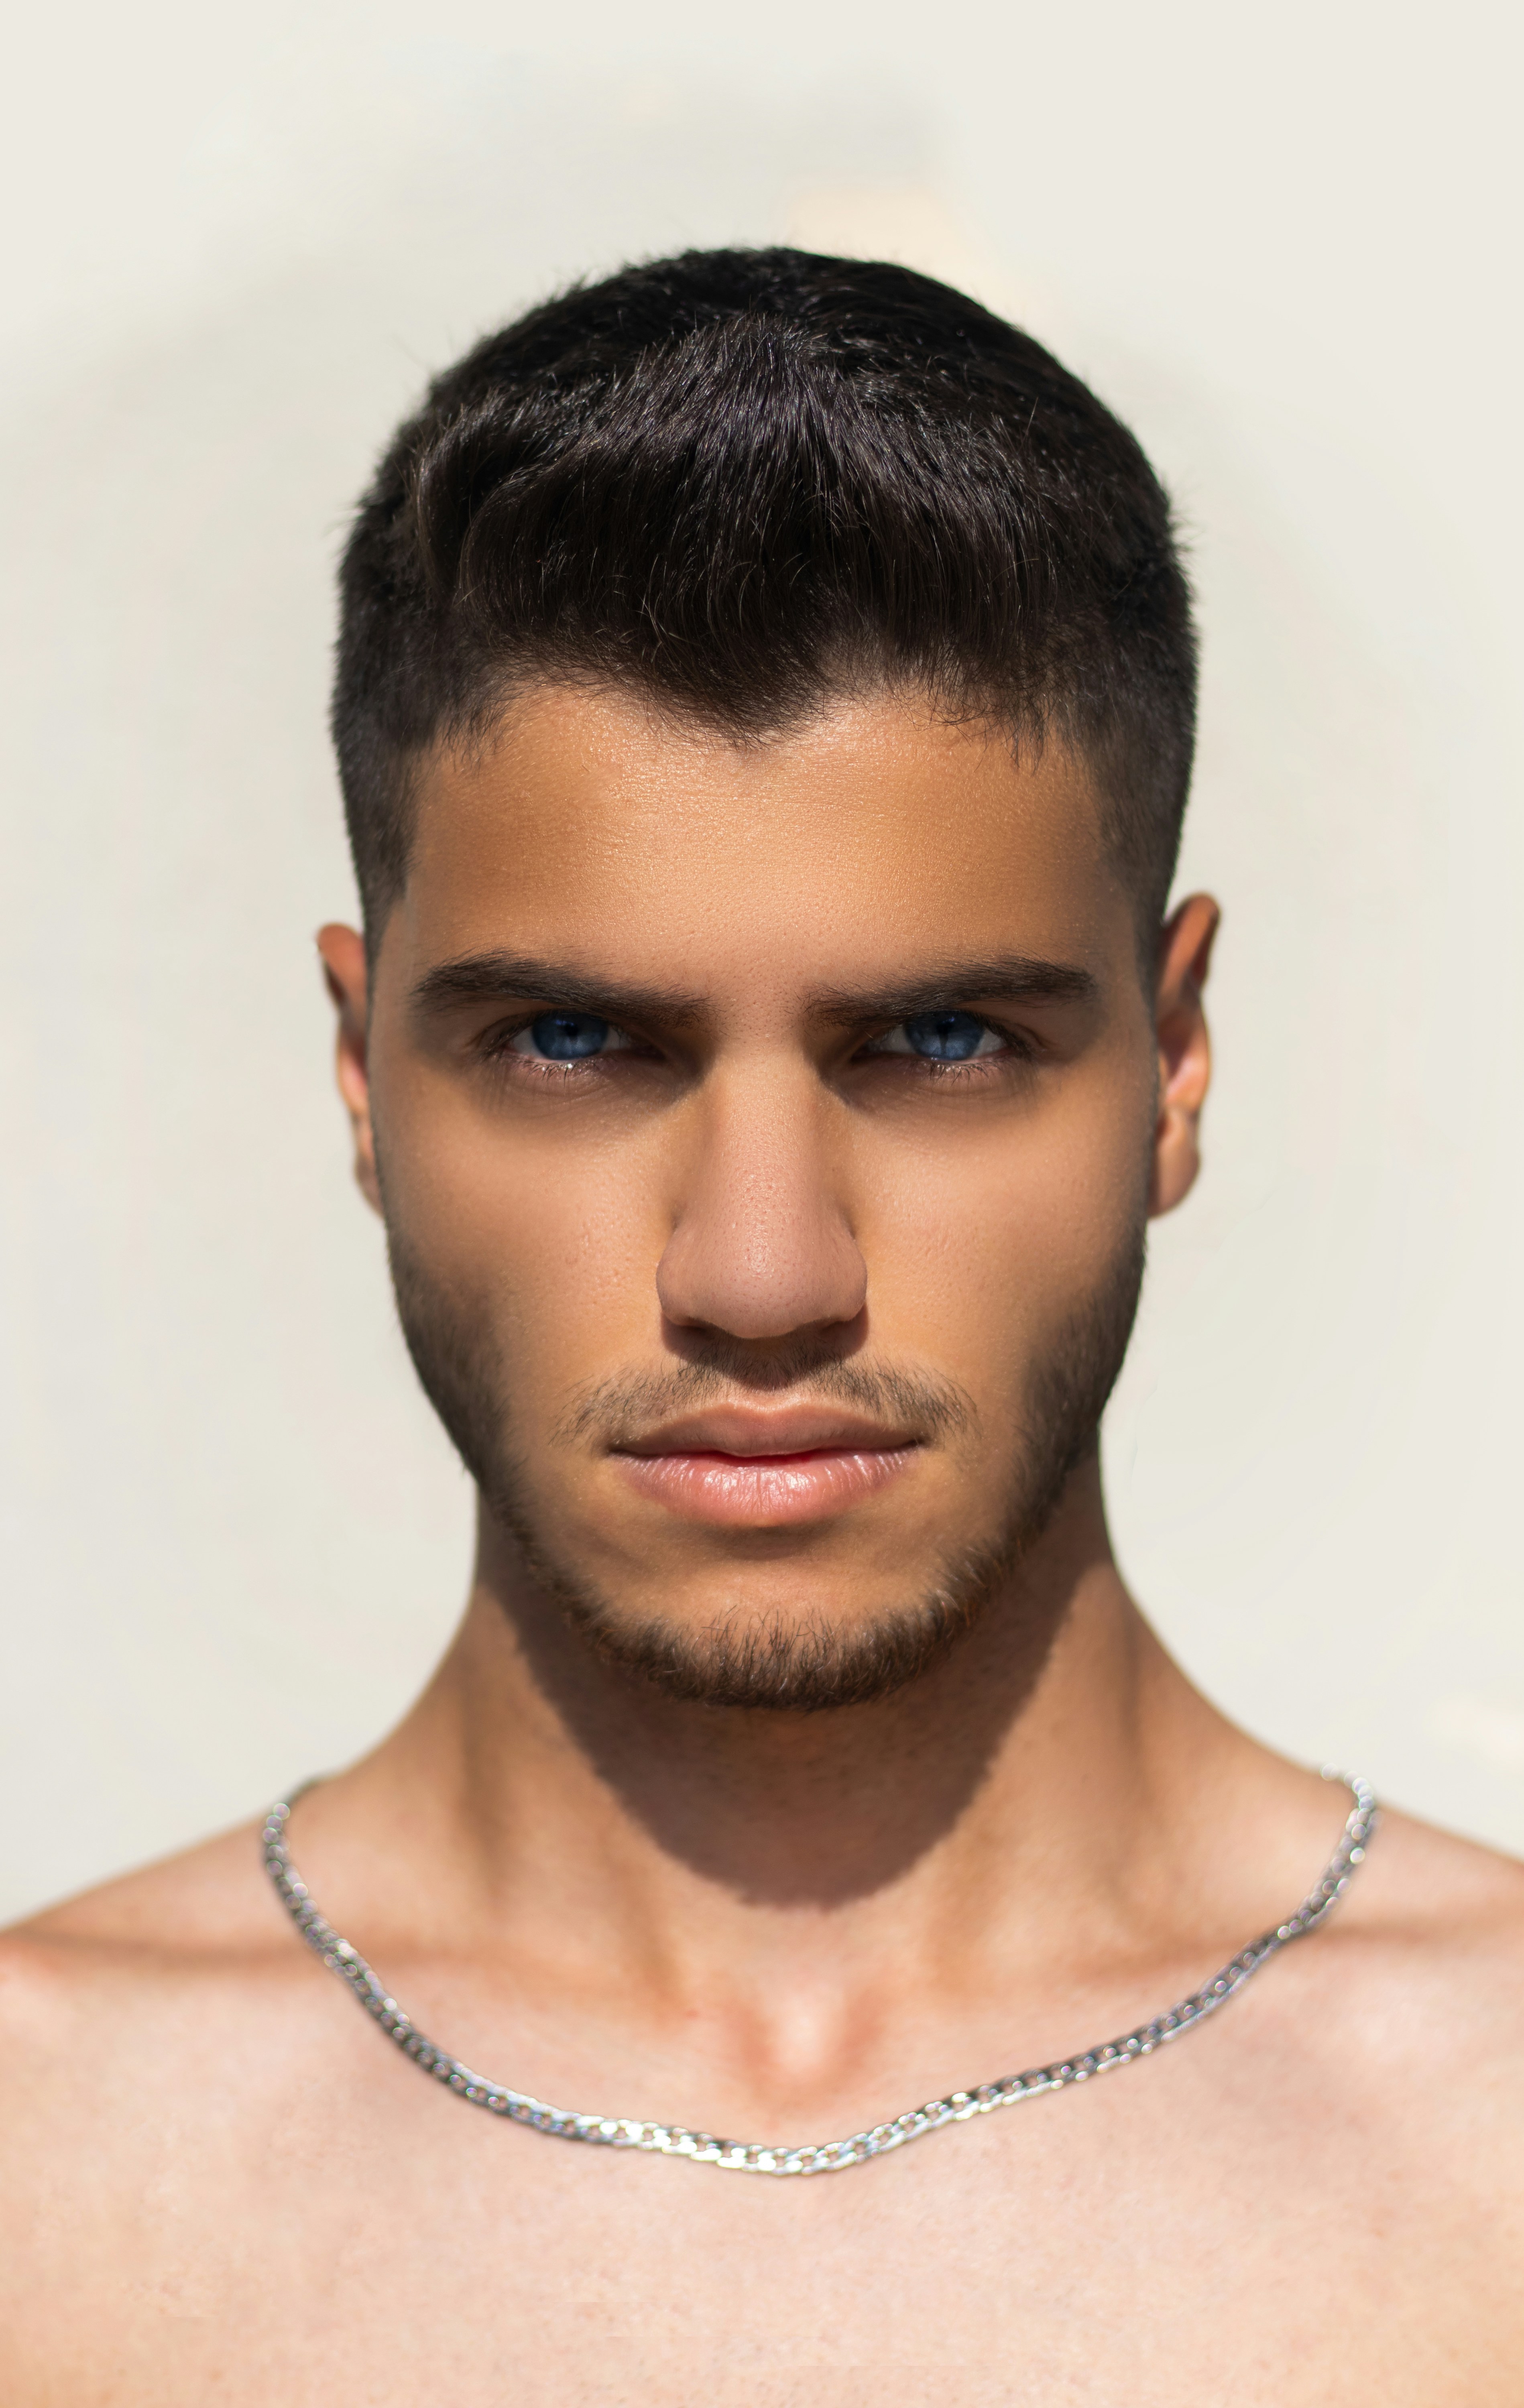 Como usar colar masculino com muita elegância? | Alexandre Taleb